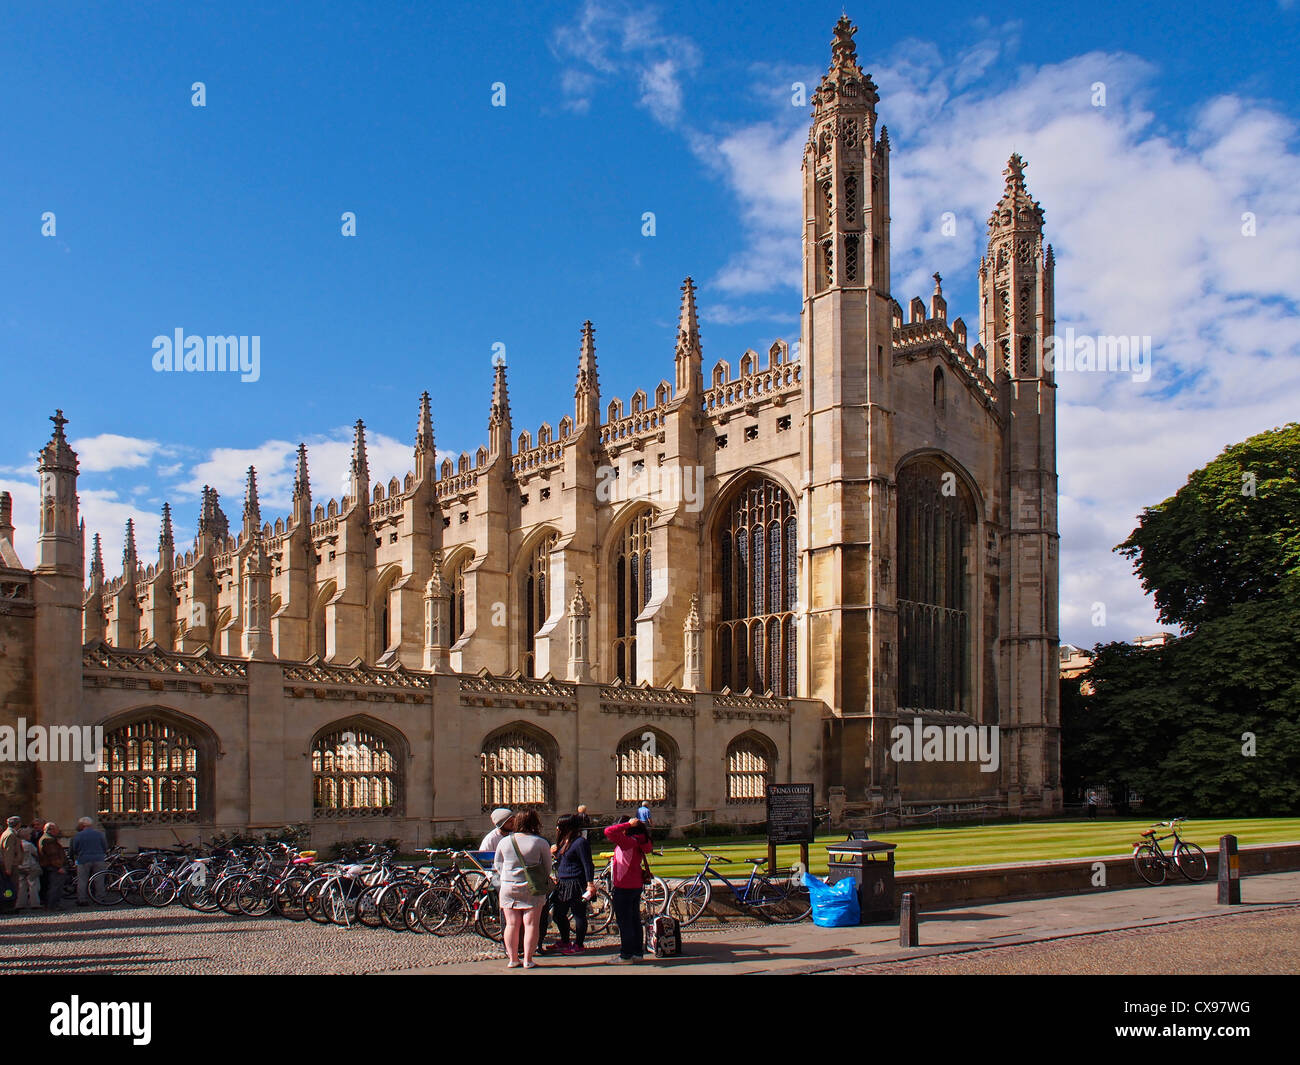 Imagen panorámica de la parte frontal de la capilla de King's College Cambridge contra el azul cielo otoñal Foto de stock